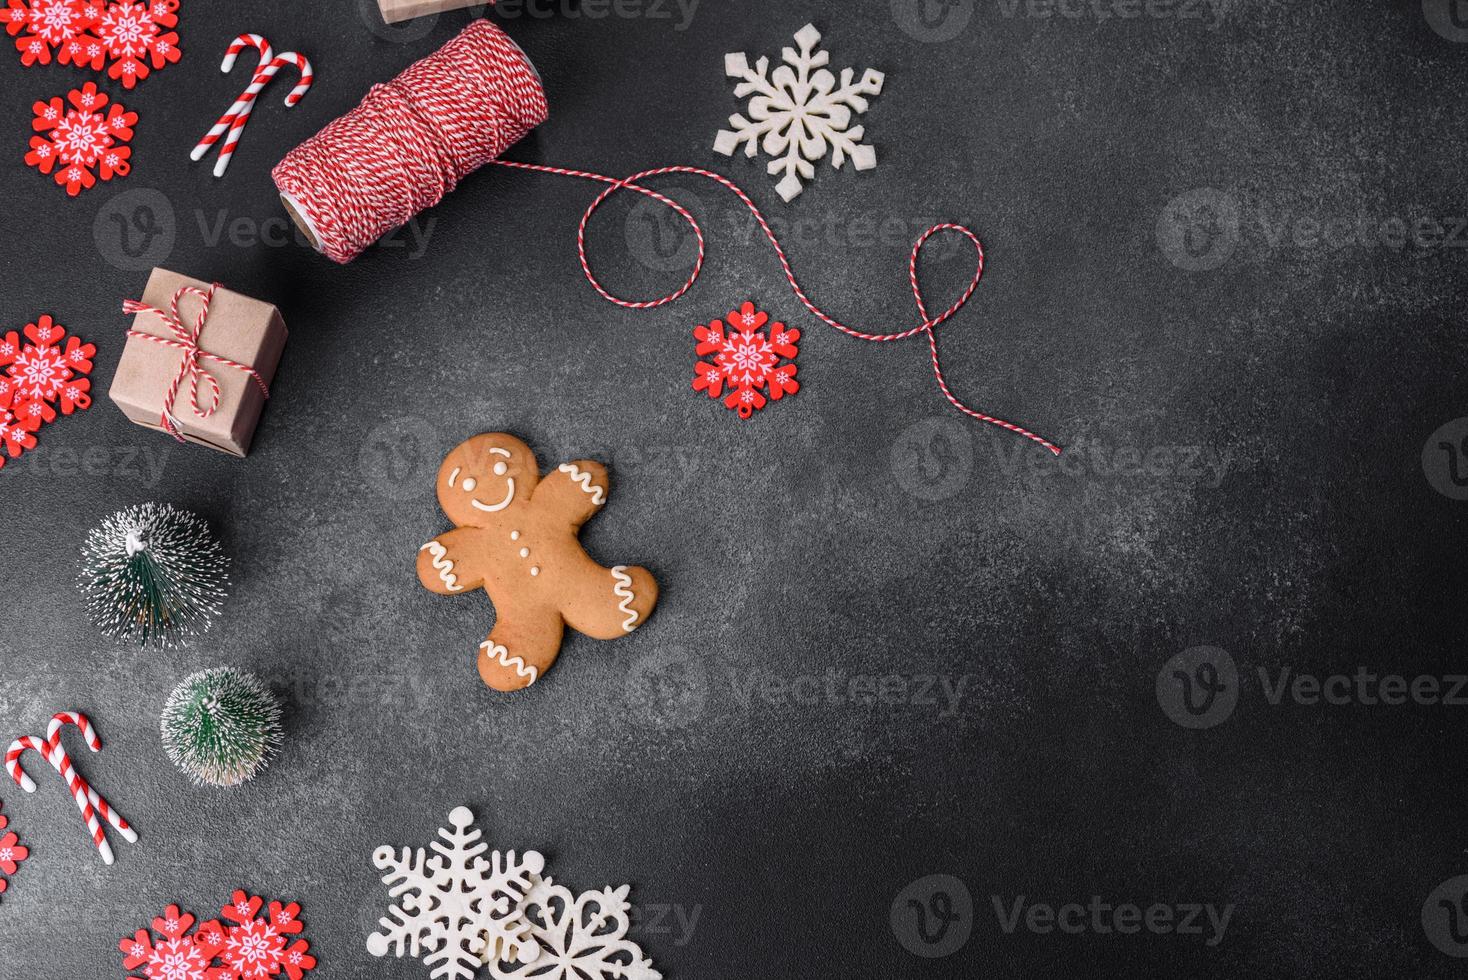 brinquedos de natal e decorações em um fundo escuro de concreto foto